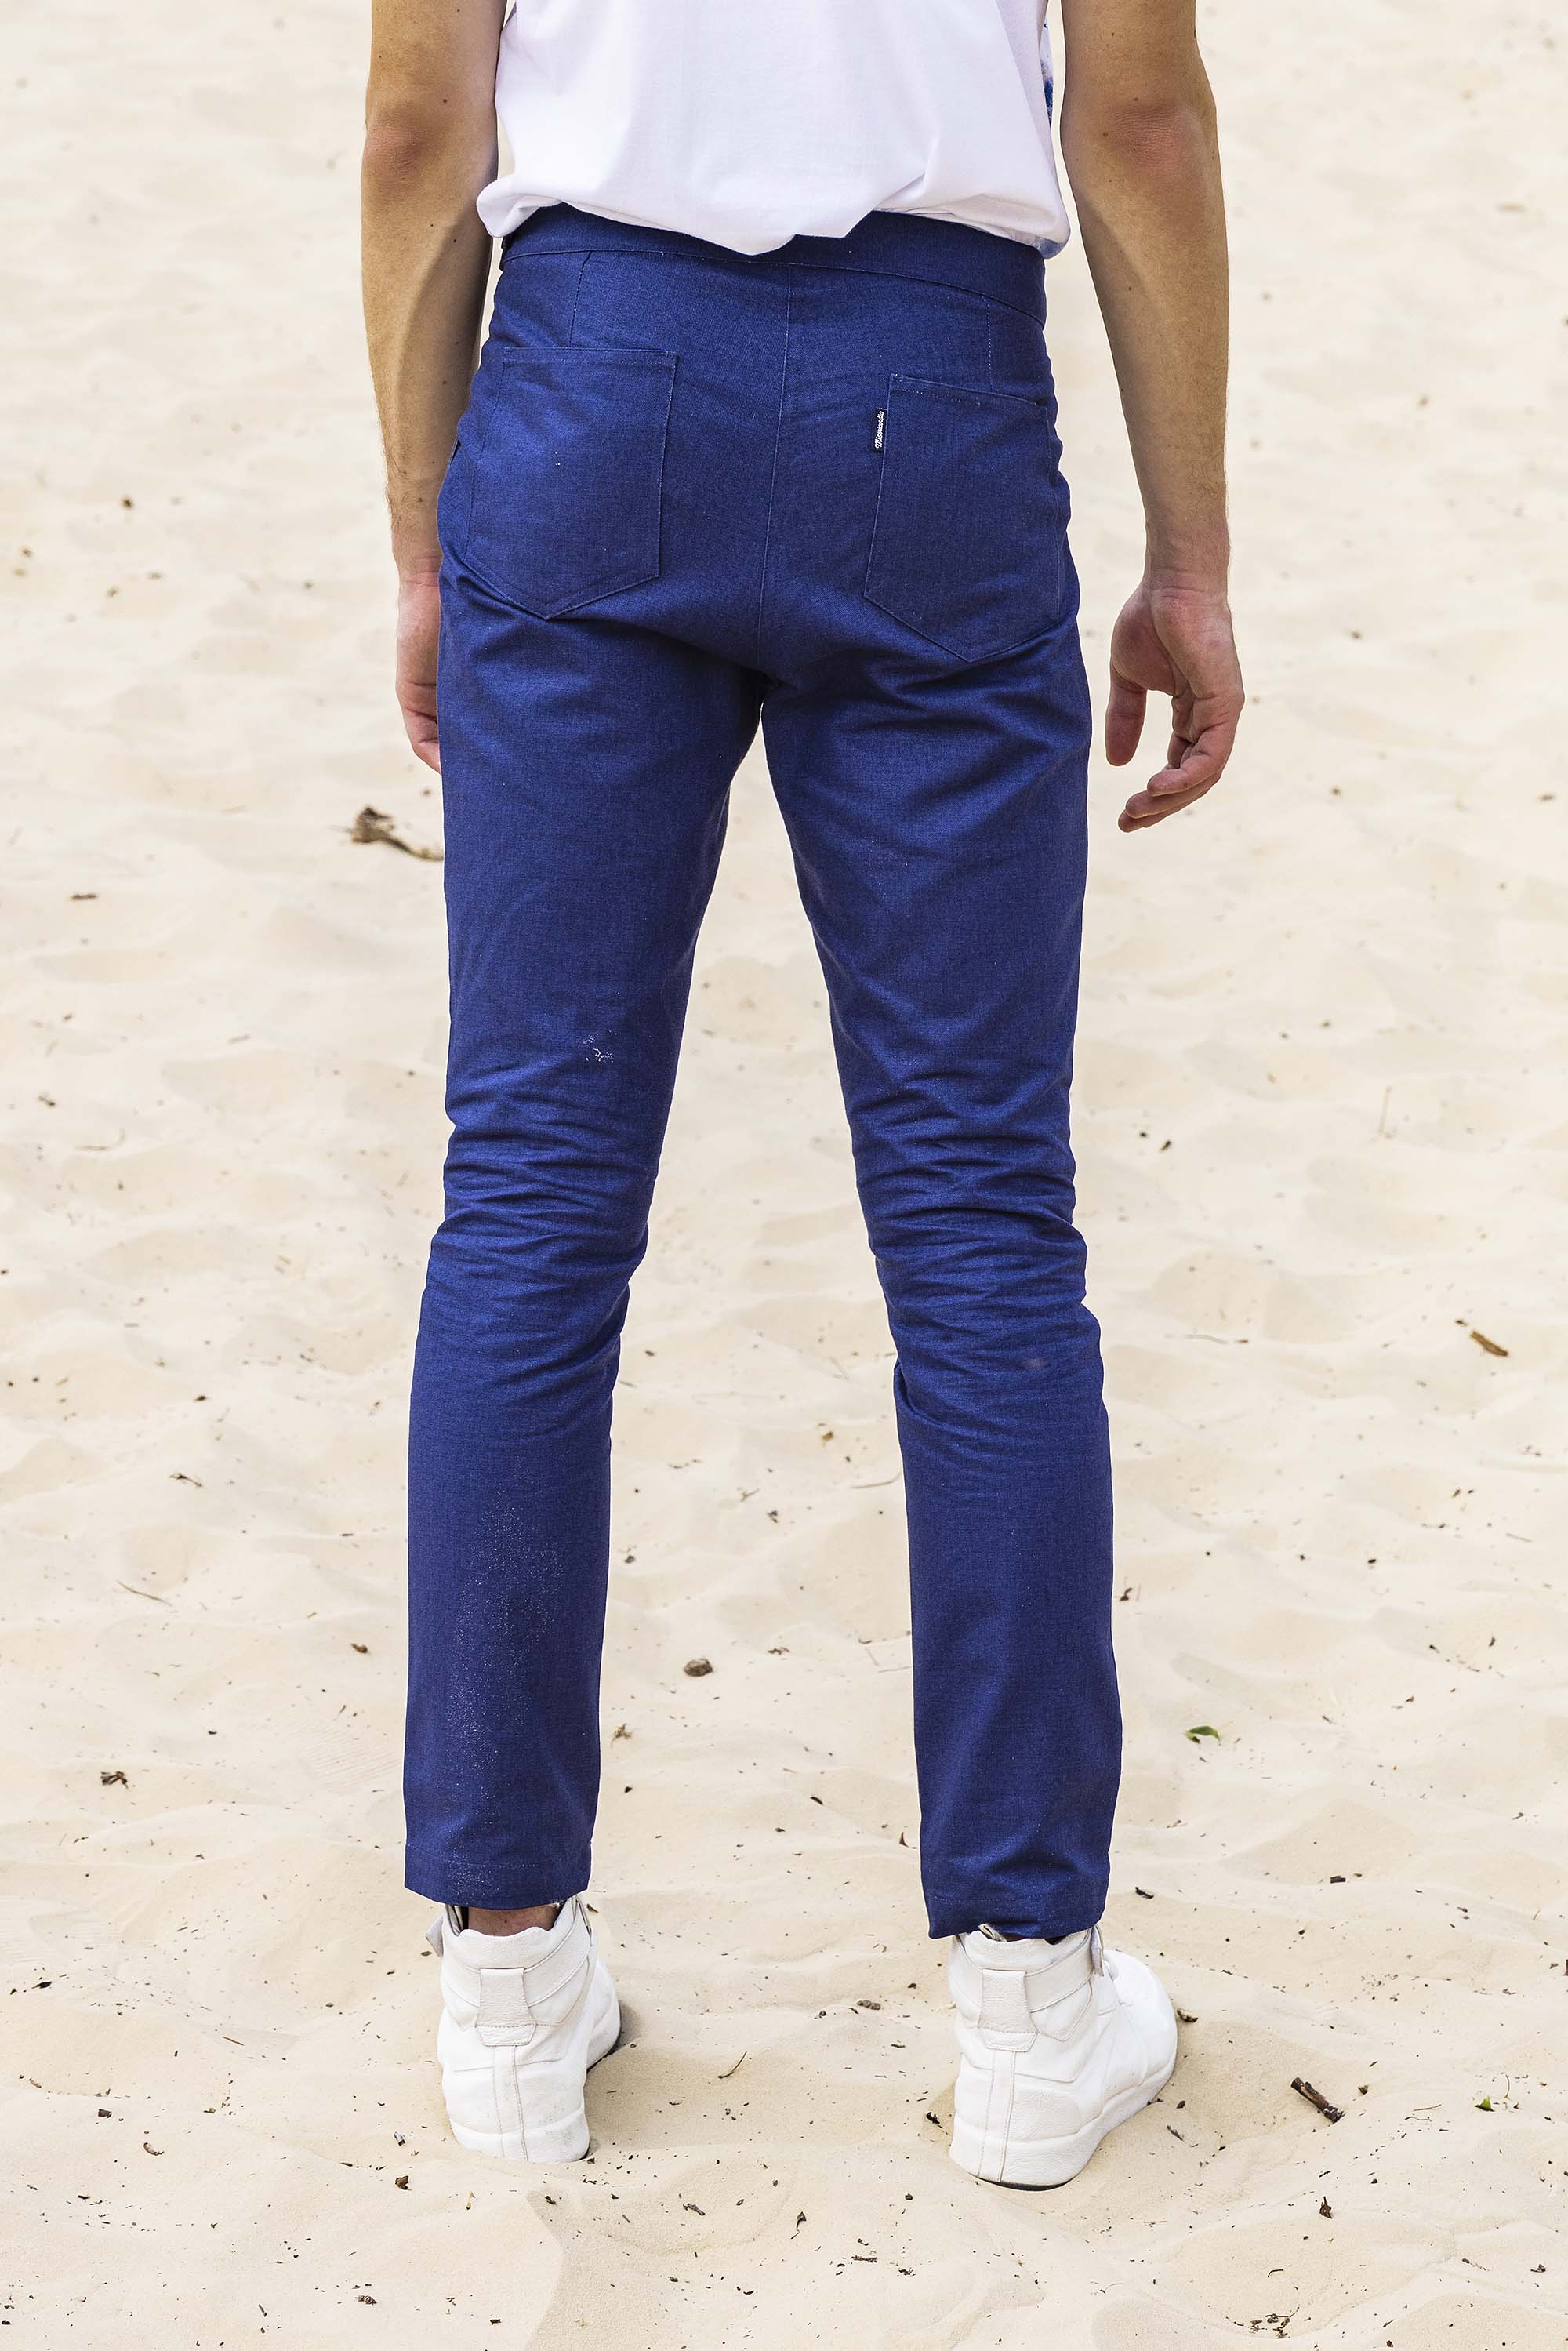 Pantalon Caiman Bleu Outremer le pantalon classique affiche un esprit de distinction